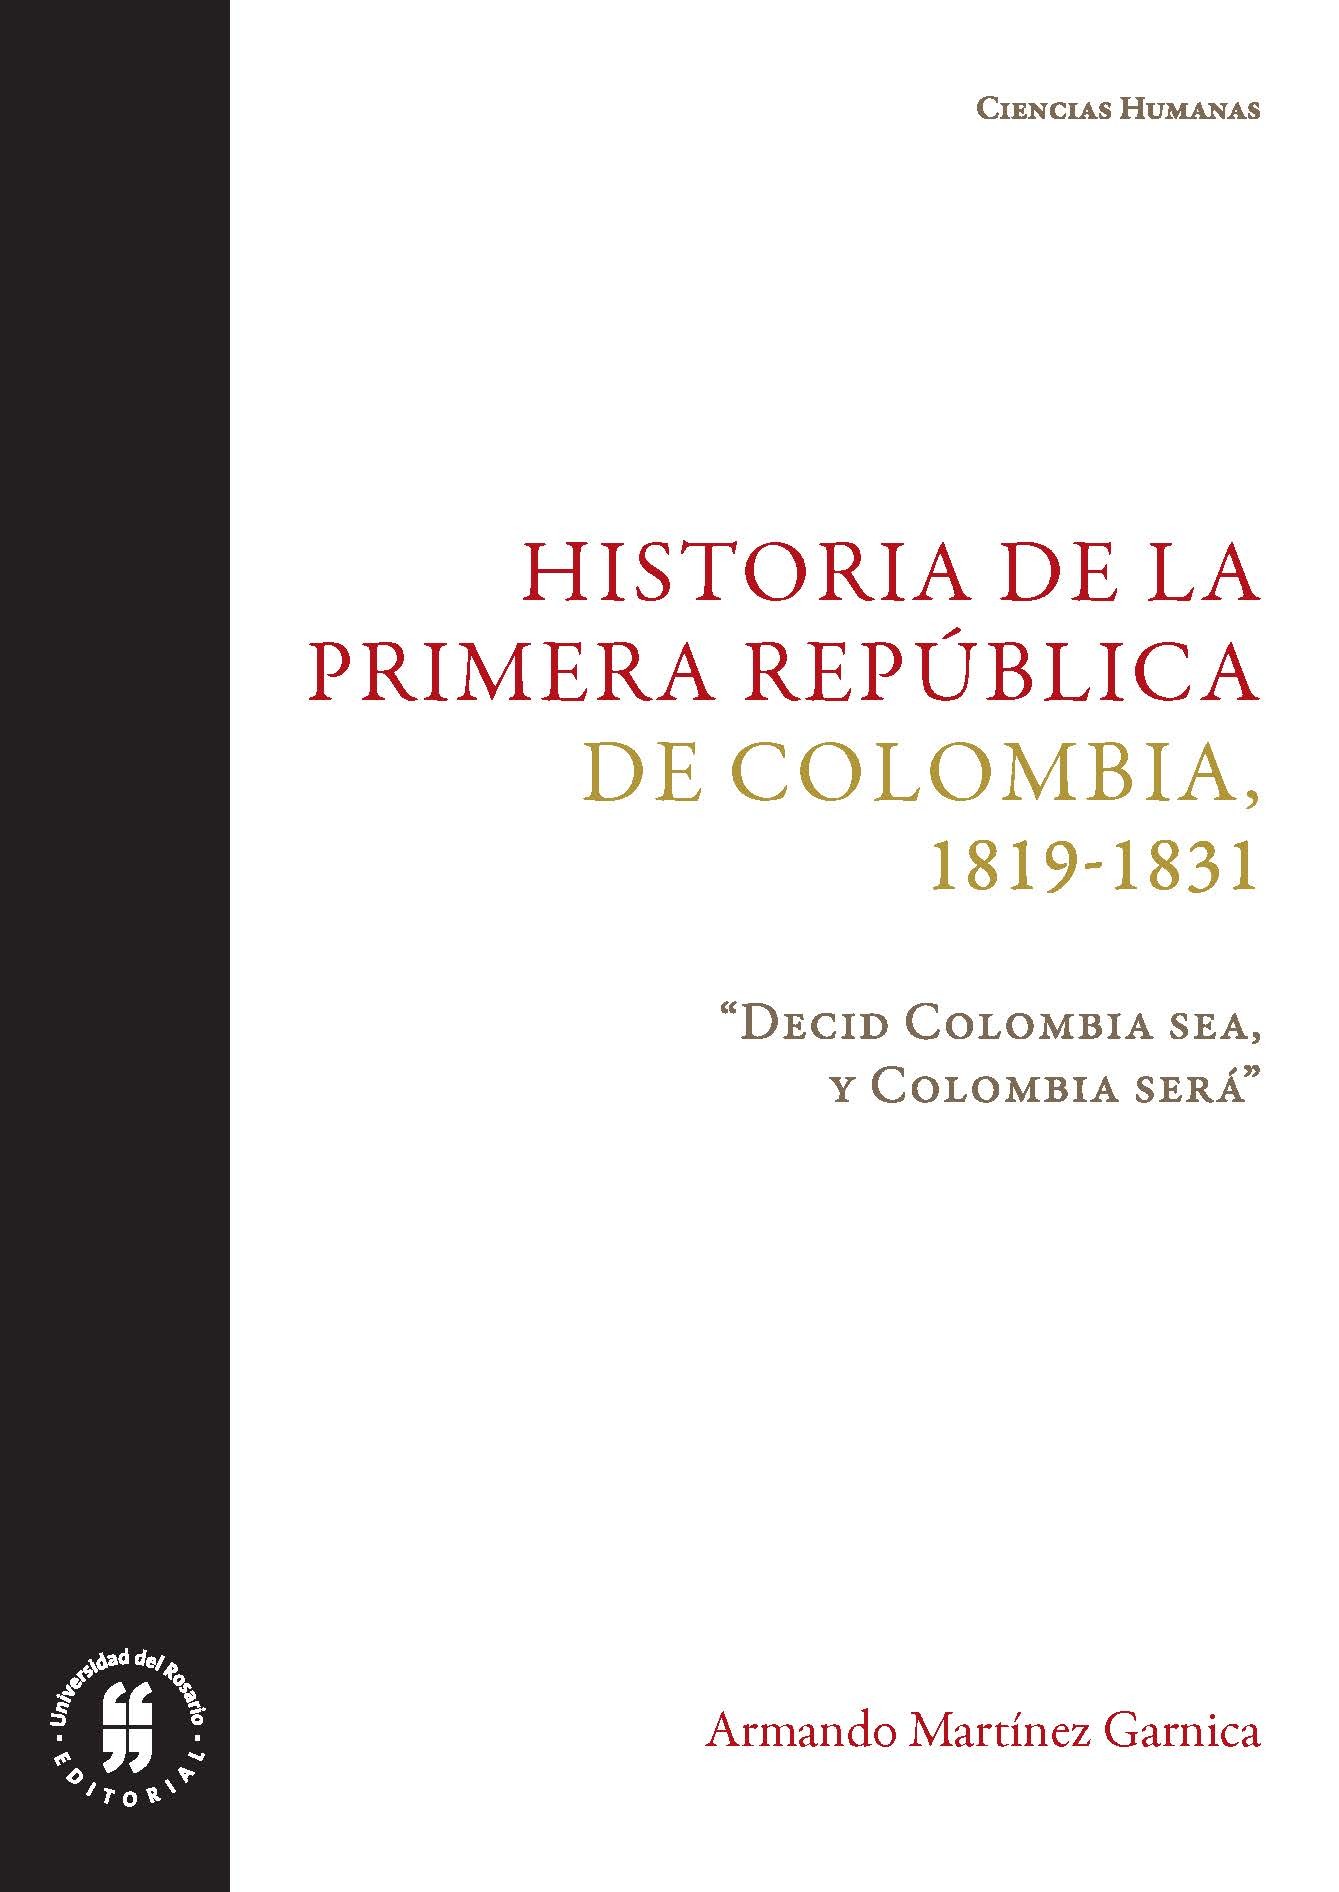 Historia de la Primera República de Colombia, 1819-1831